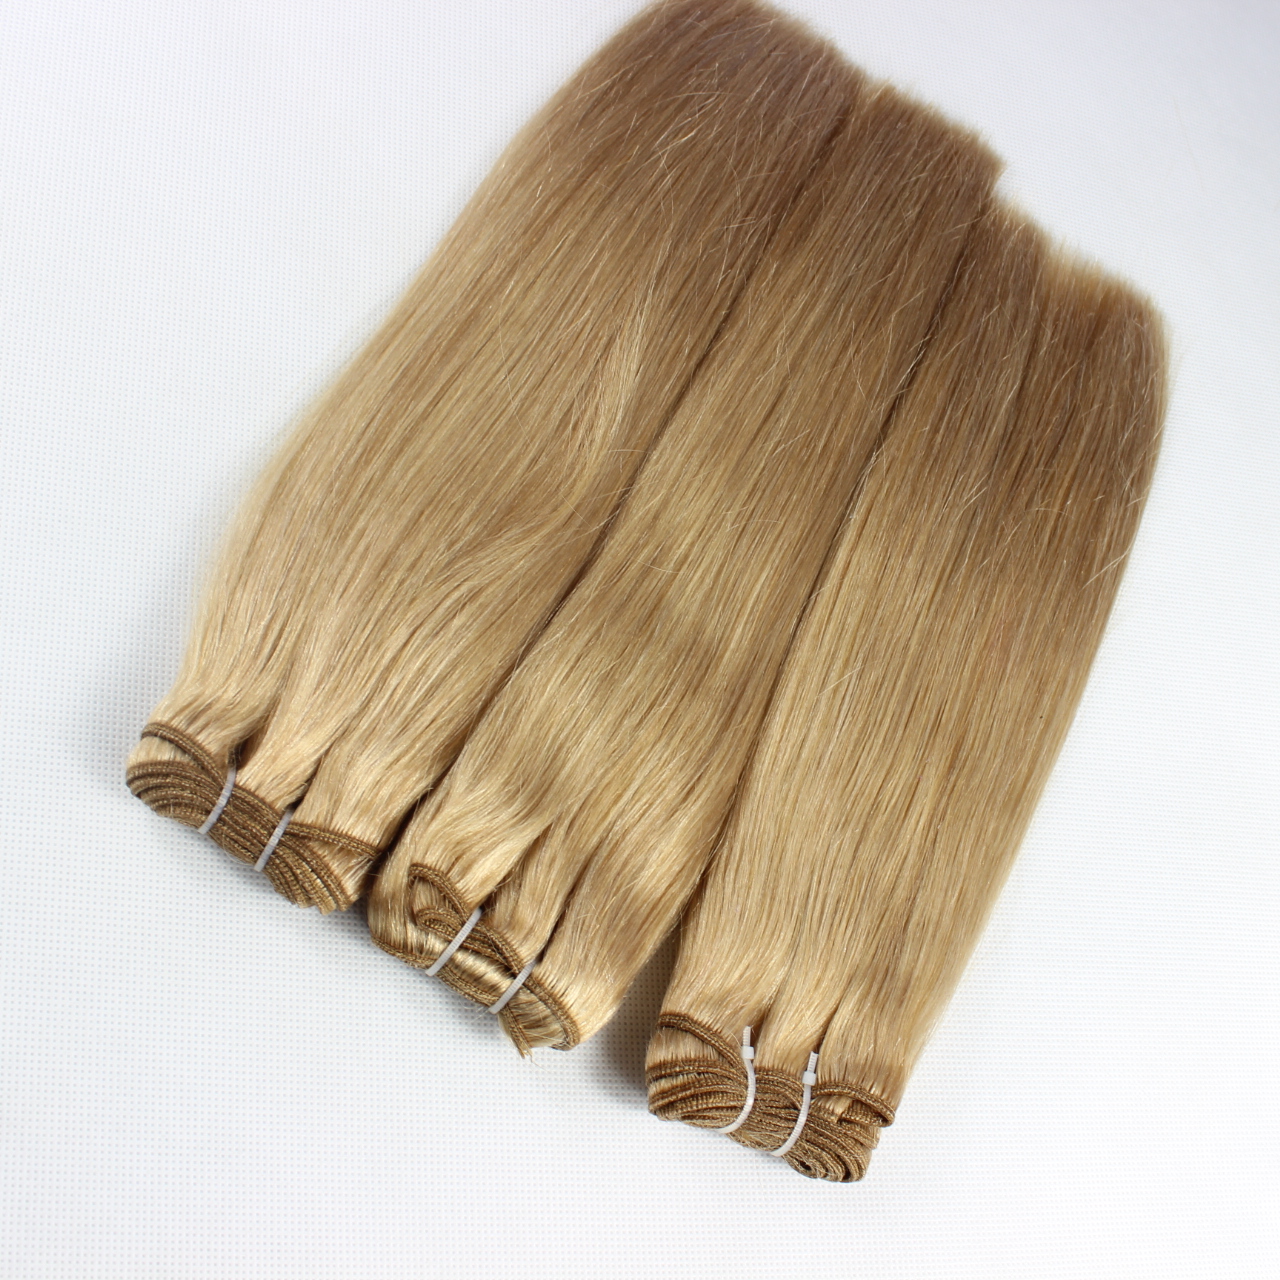 Chocolate hair weave 18 inch,fashion idol hair weave,dream weave remi hairHN350